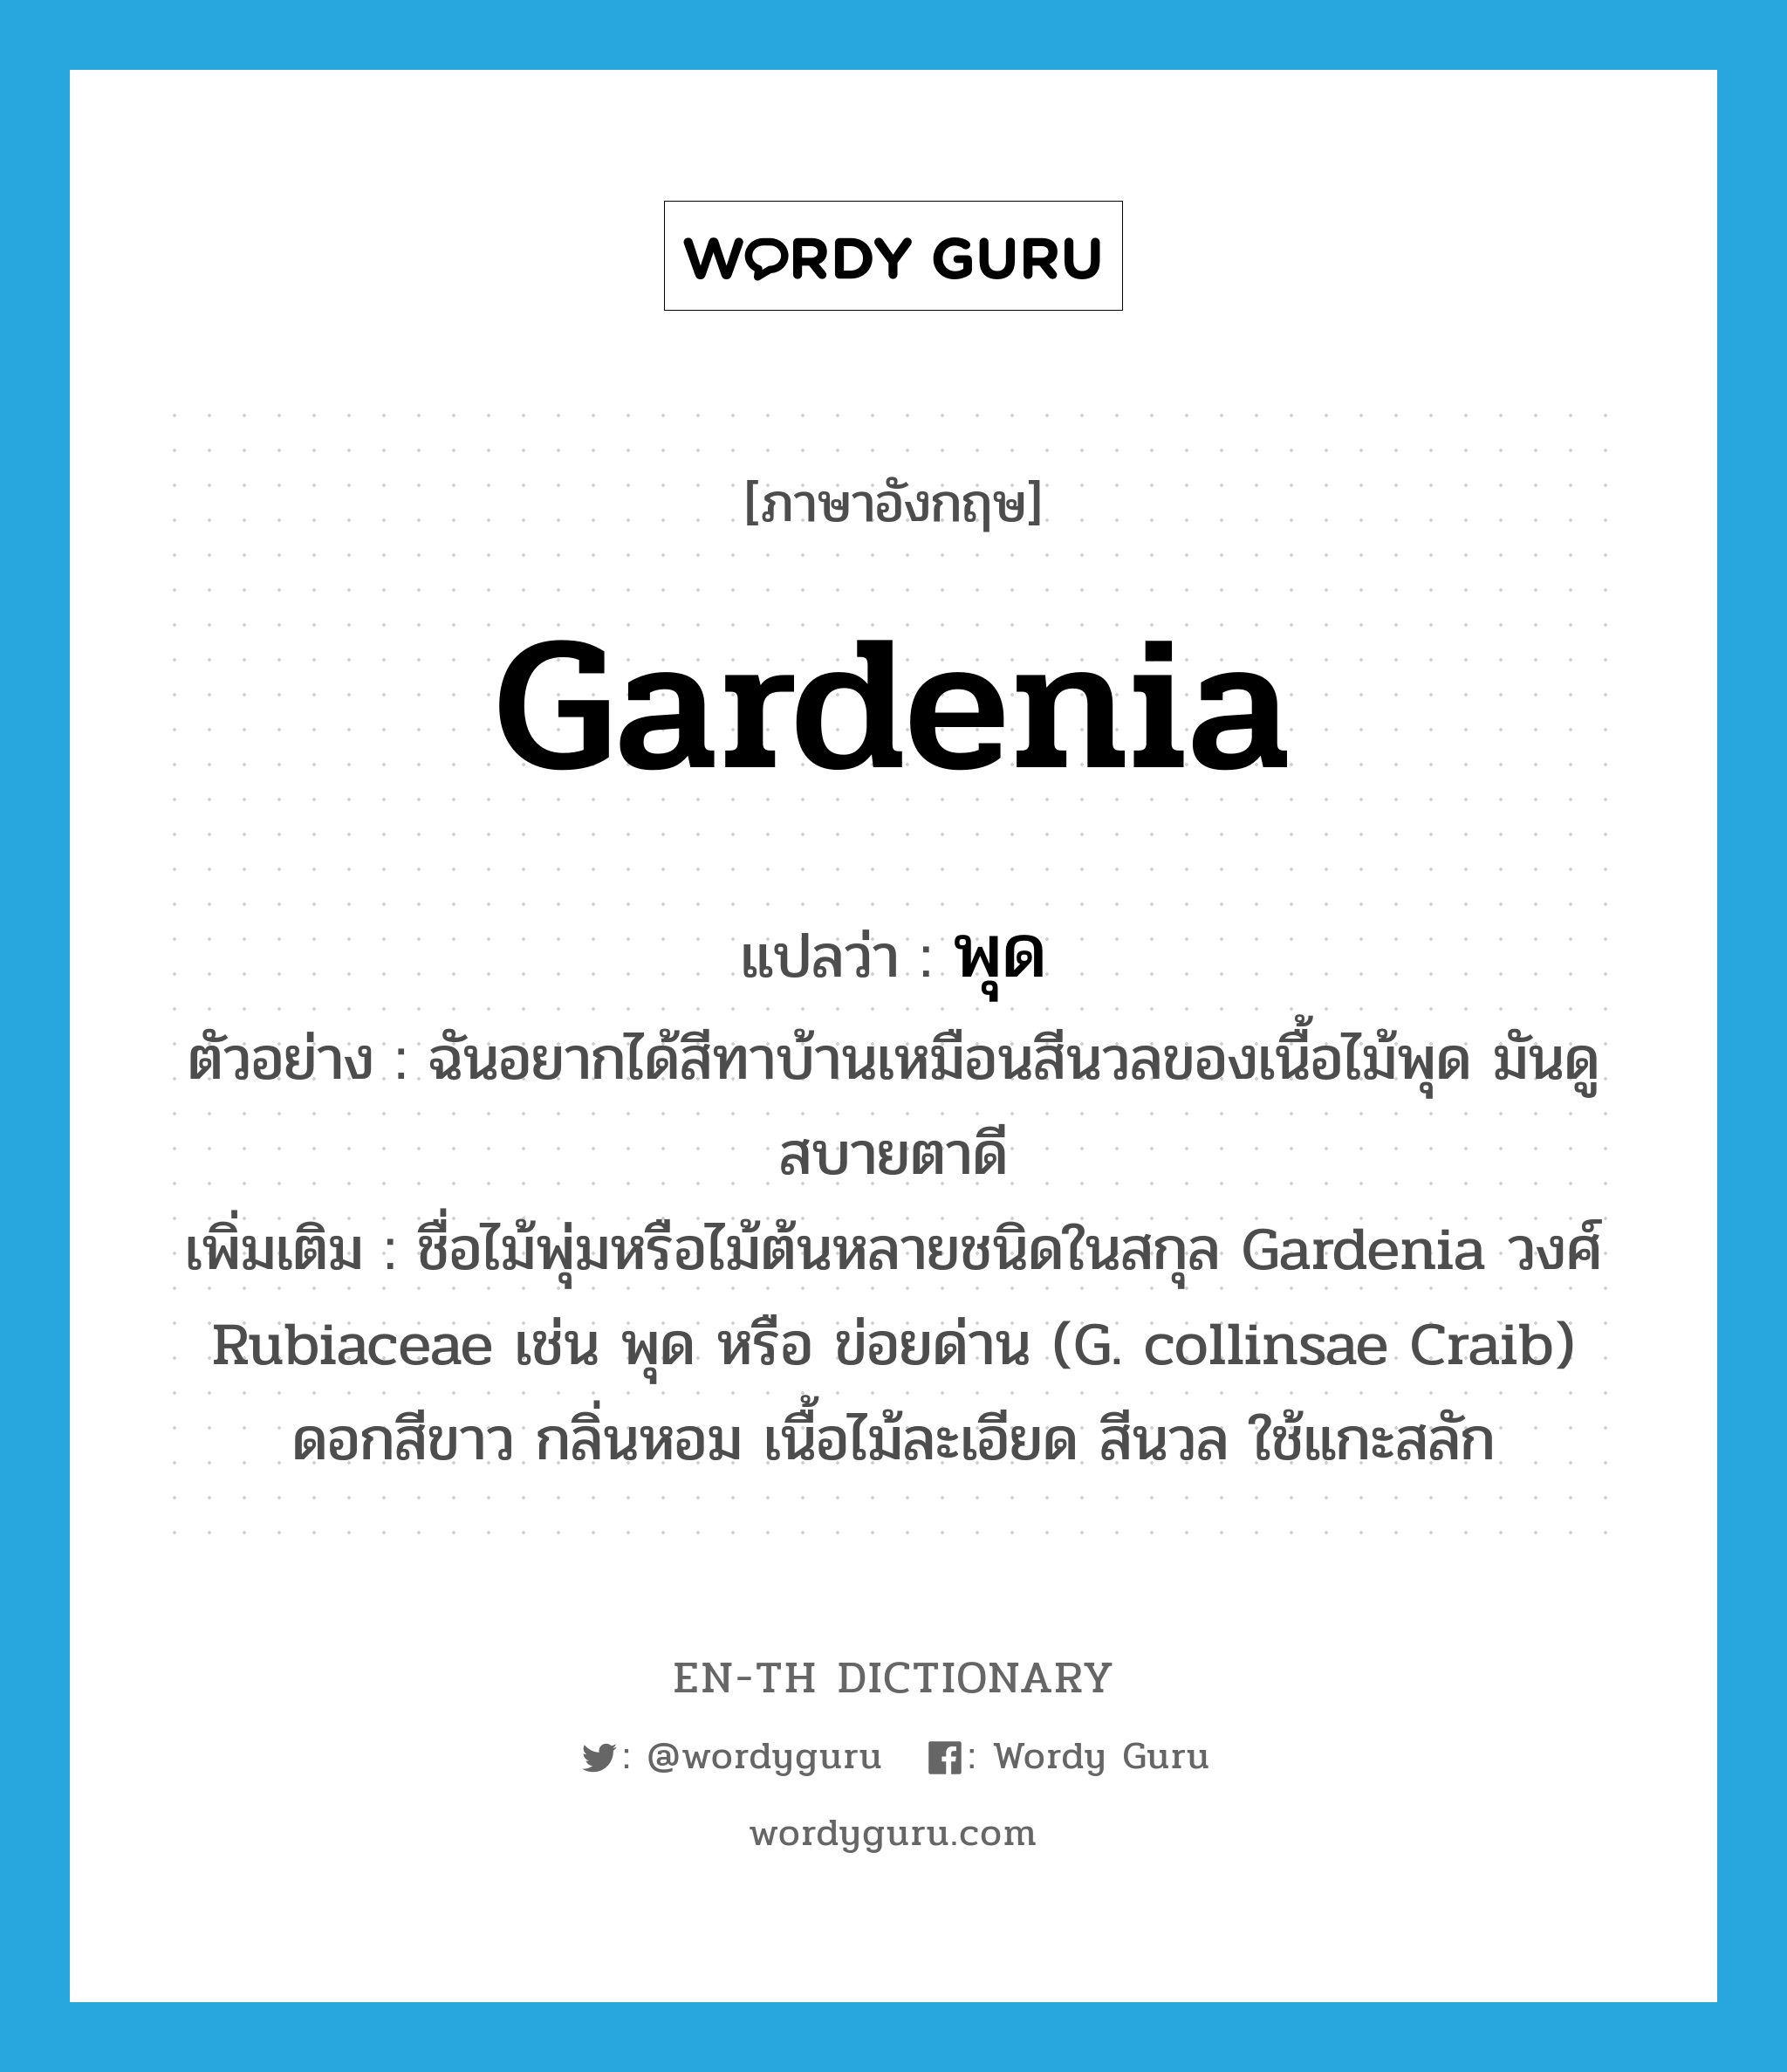 gardenia แปลว่า?, คำศัพท์ภาษาอังกฤษ Gardenia แปลว่า พุด ประเภท N ตัวอย่าง ฉันอยากได้สีทาบ้านเหมือนสีนวลของเนื้อไม้พุด มันดูสบายตาดี เพิ่มเติม ชื่อไม้พุ่มหรือไม้ต้นหลายชนิดในสกุล Gardenia วงศ์ Rubiaceae เช่น พุด หรือ ข่อยด่าน (G. collinsae Craib) ดอกสีขาว กลิ่นหอม เนื้อไม้ละเอียด สีนวล ใช้แกะสลัก หมวด N